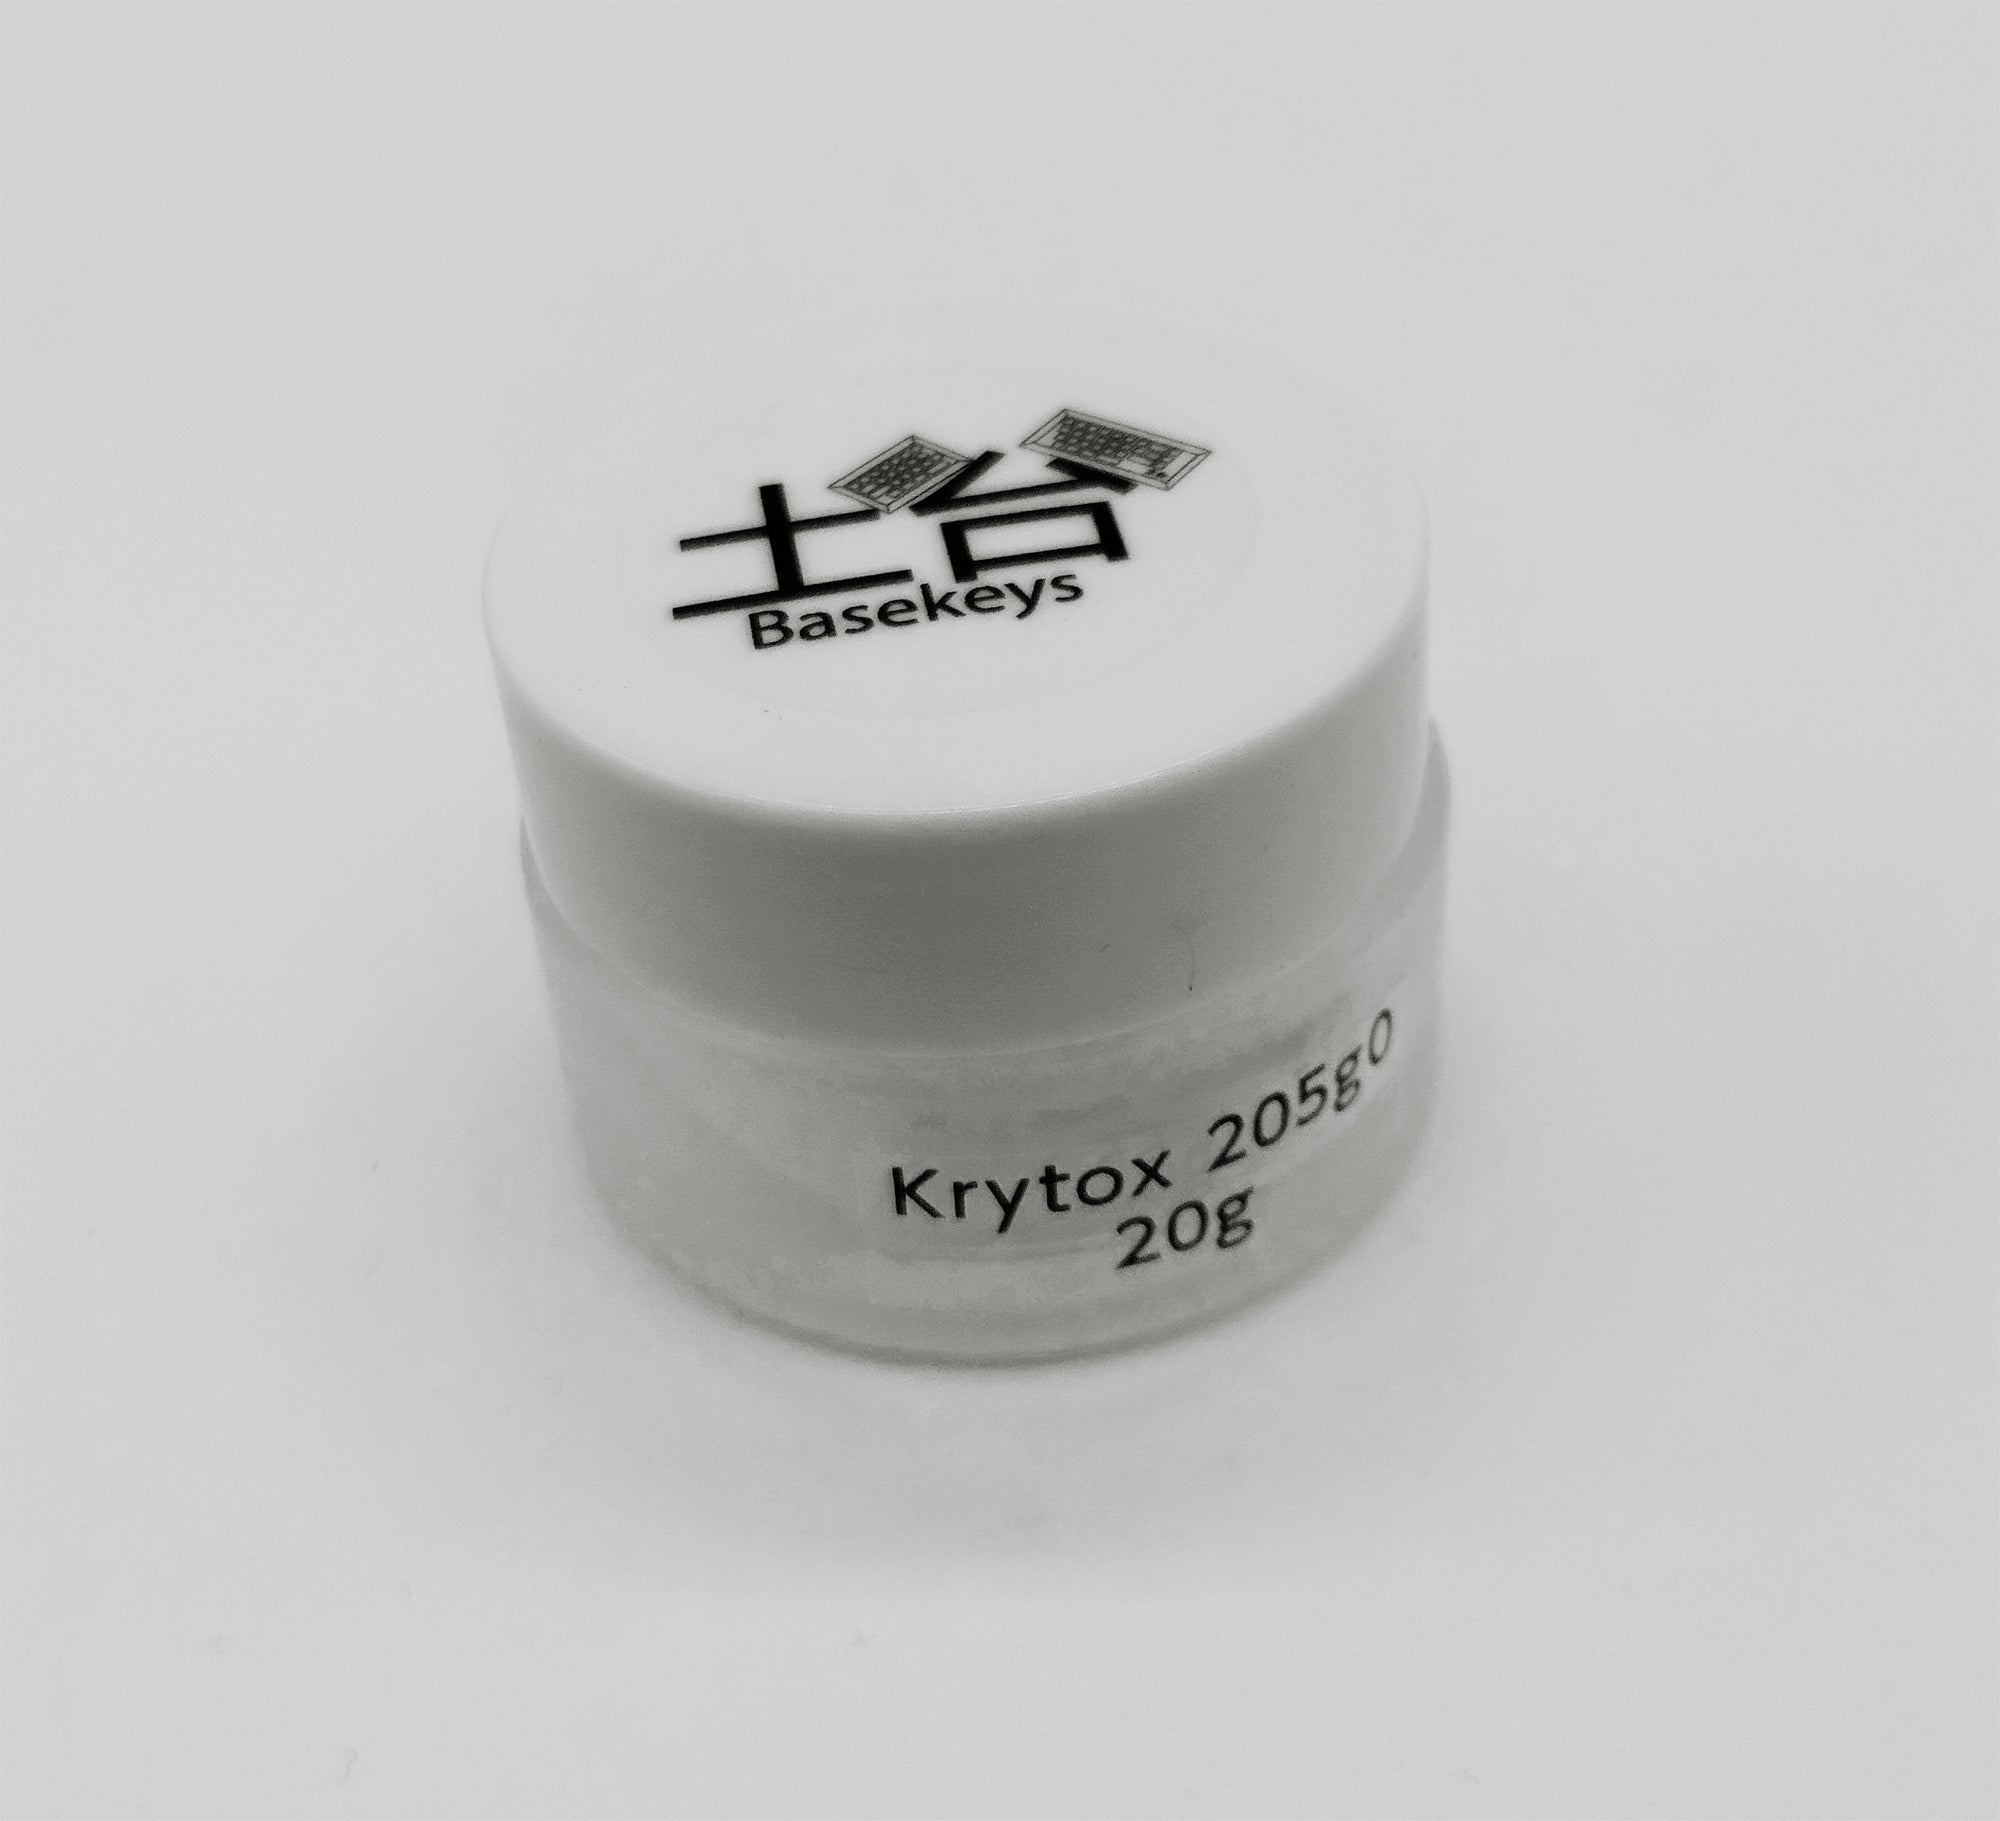 Krytox GPL 205 Grade 0